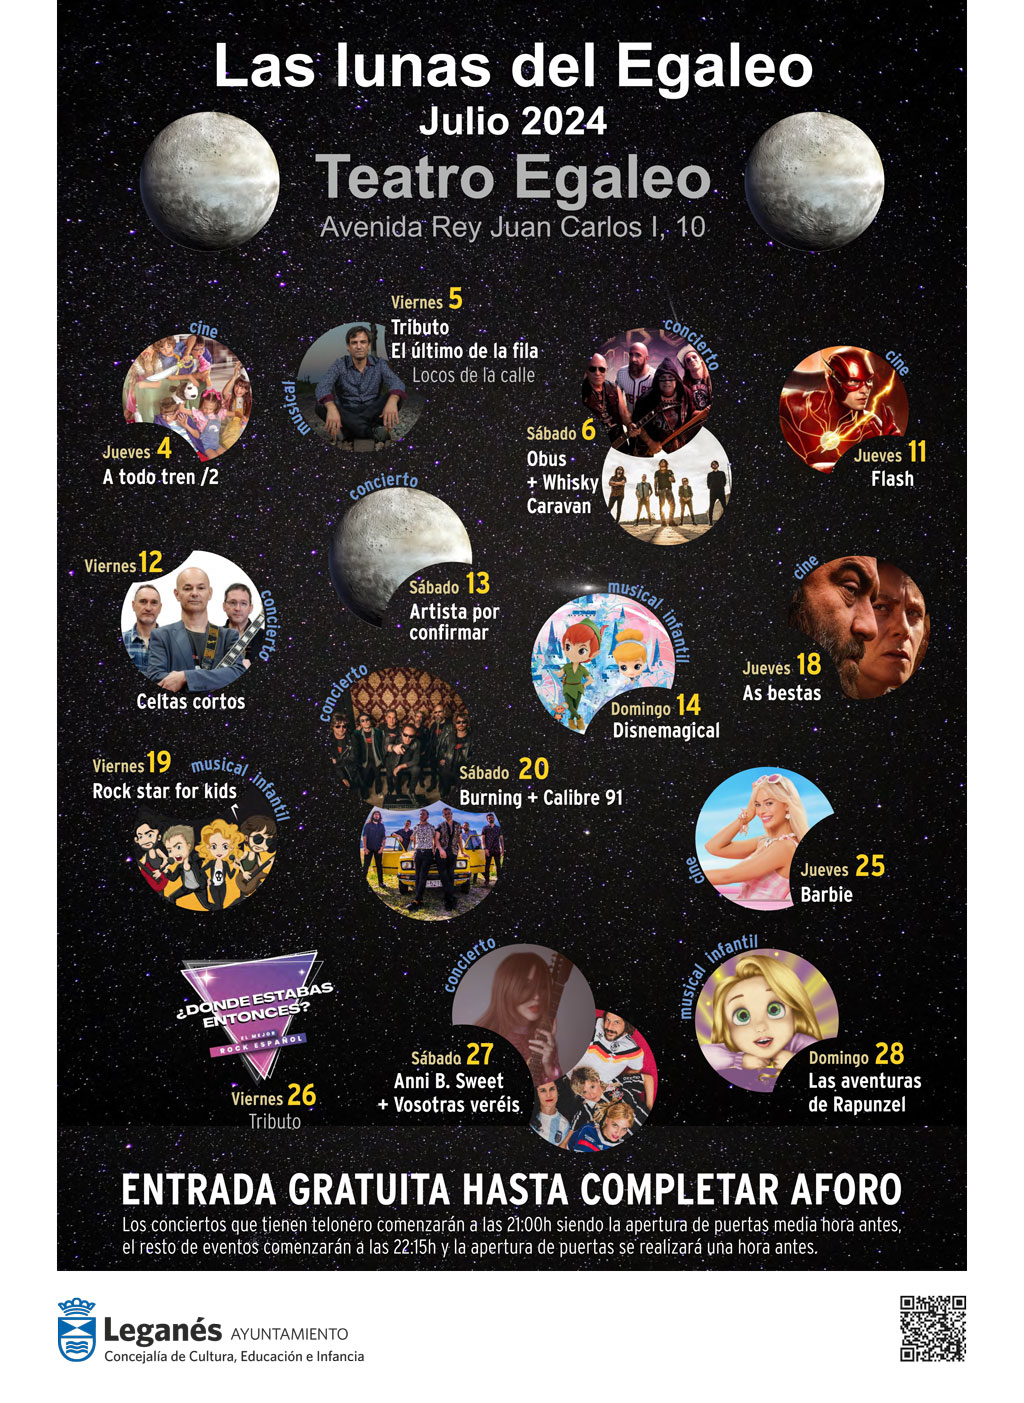 Las Lunas del Egaleo regresan al Teatro Egaleo de Leganés con cine y conciertos durante el mes de julio